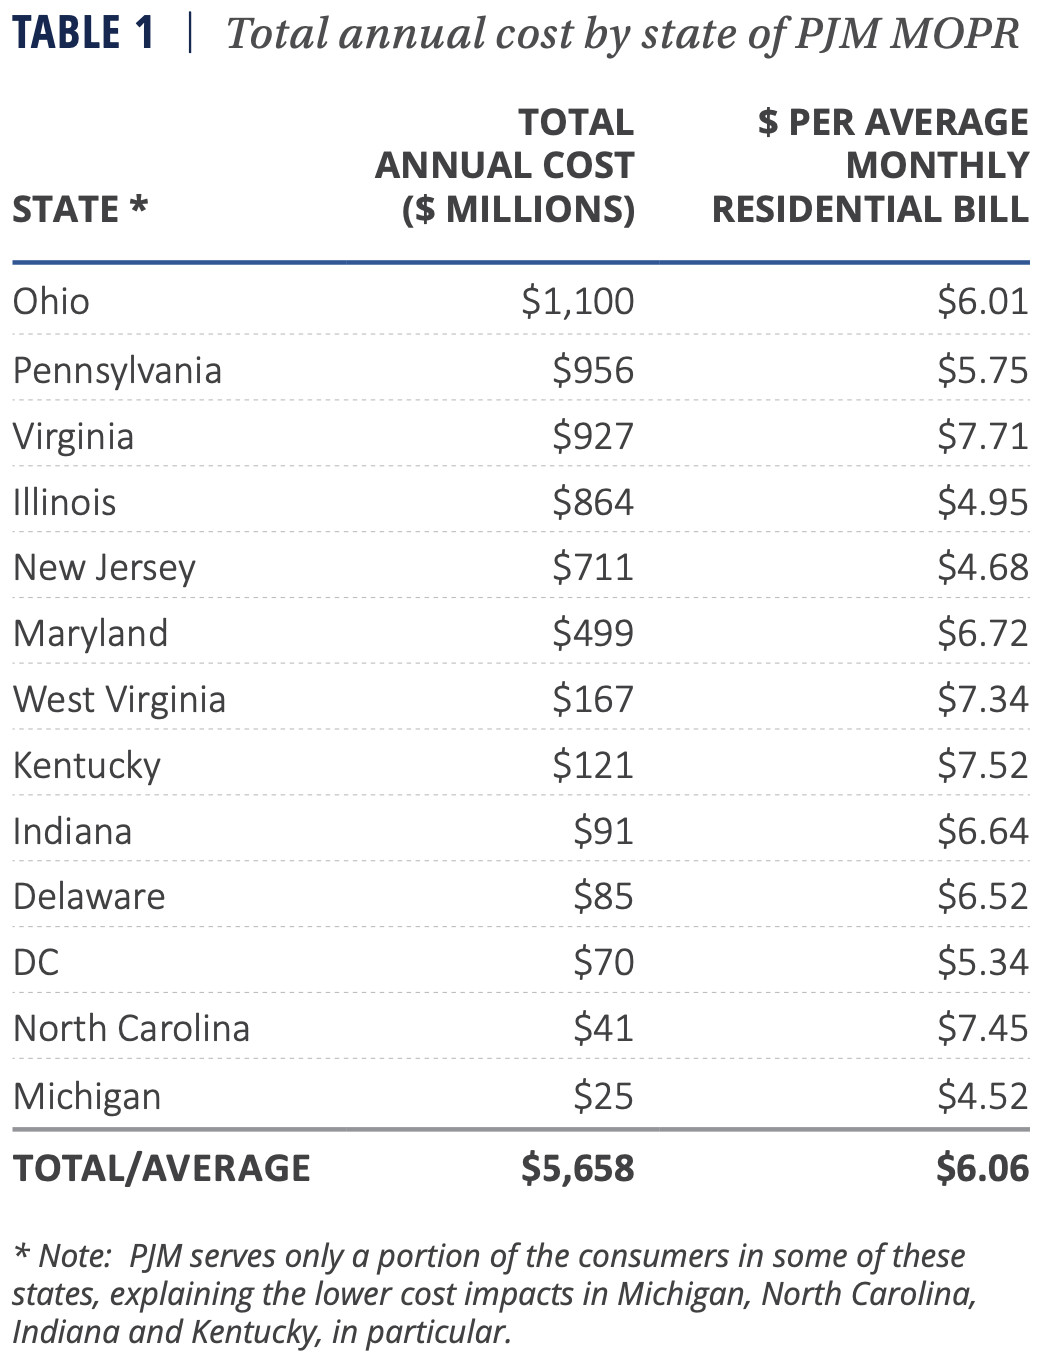 MOPR costs per state